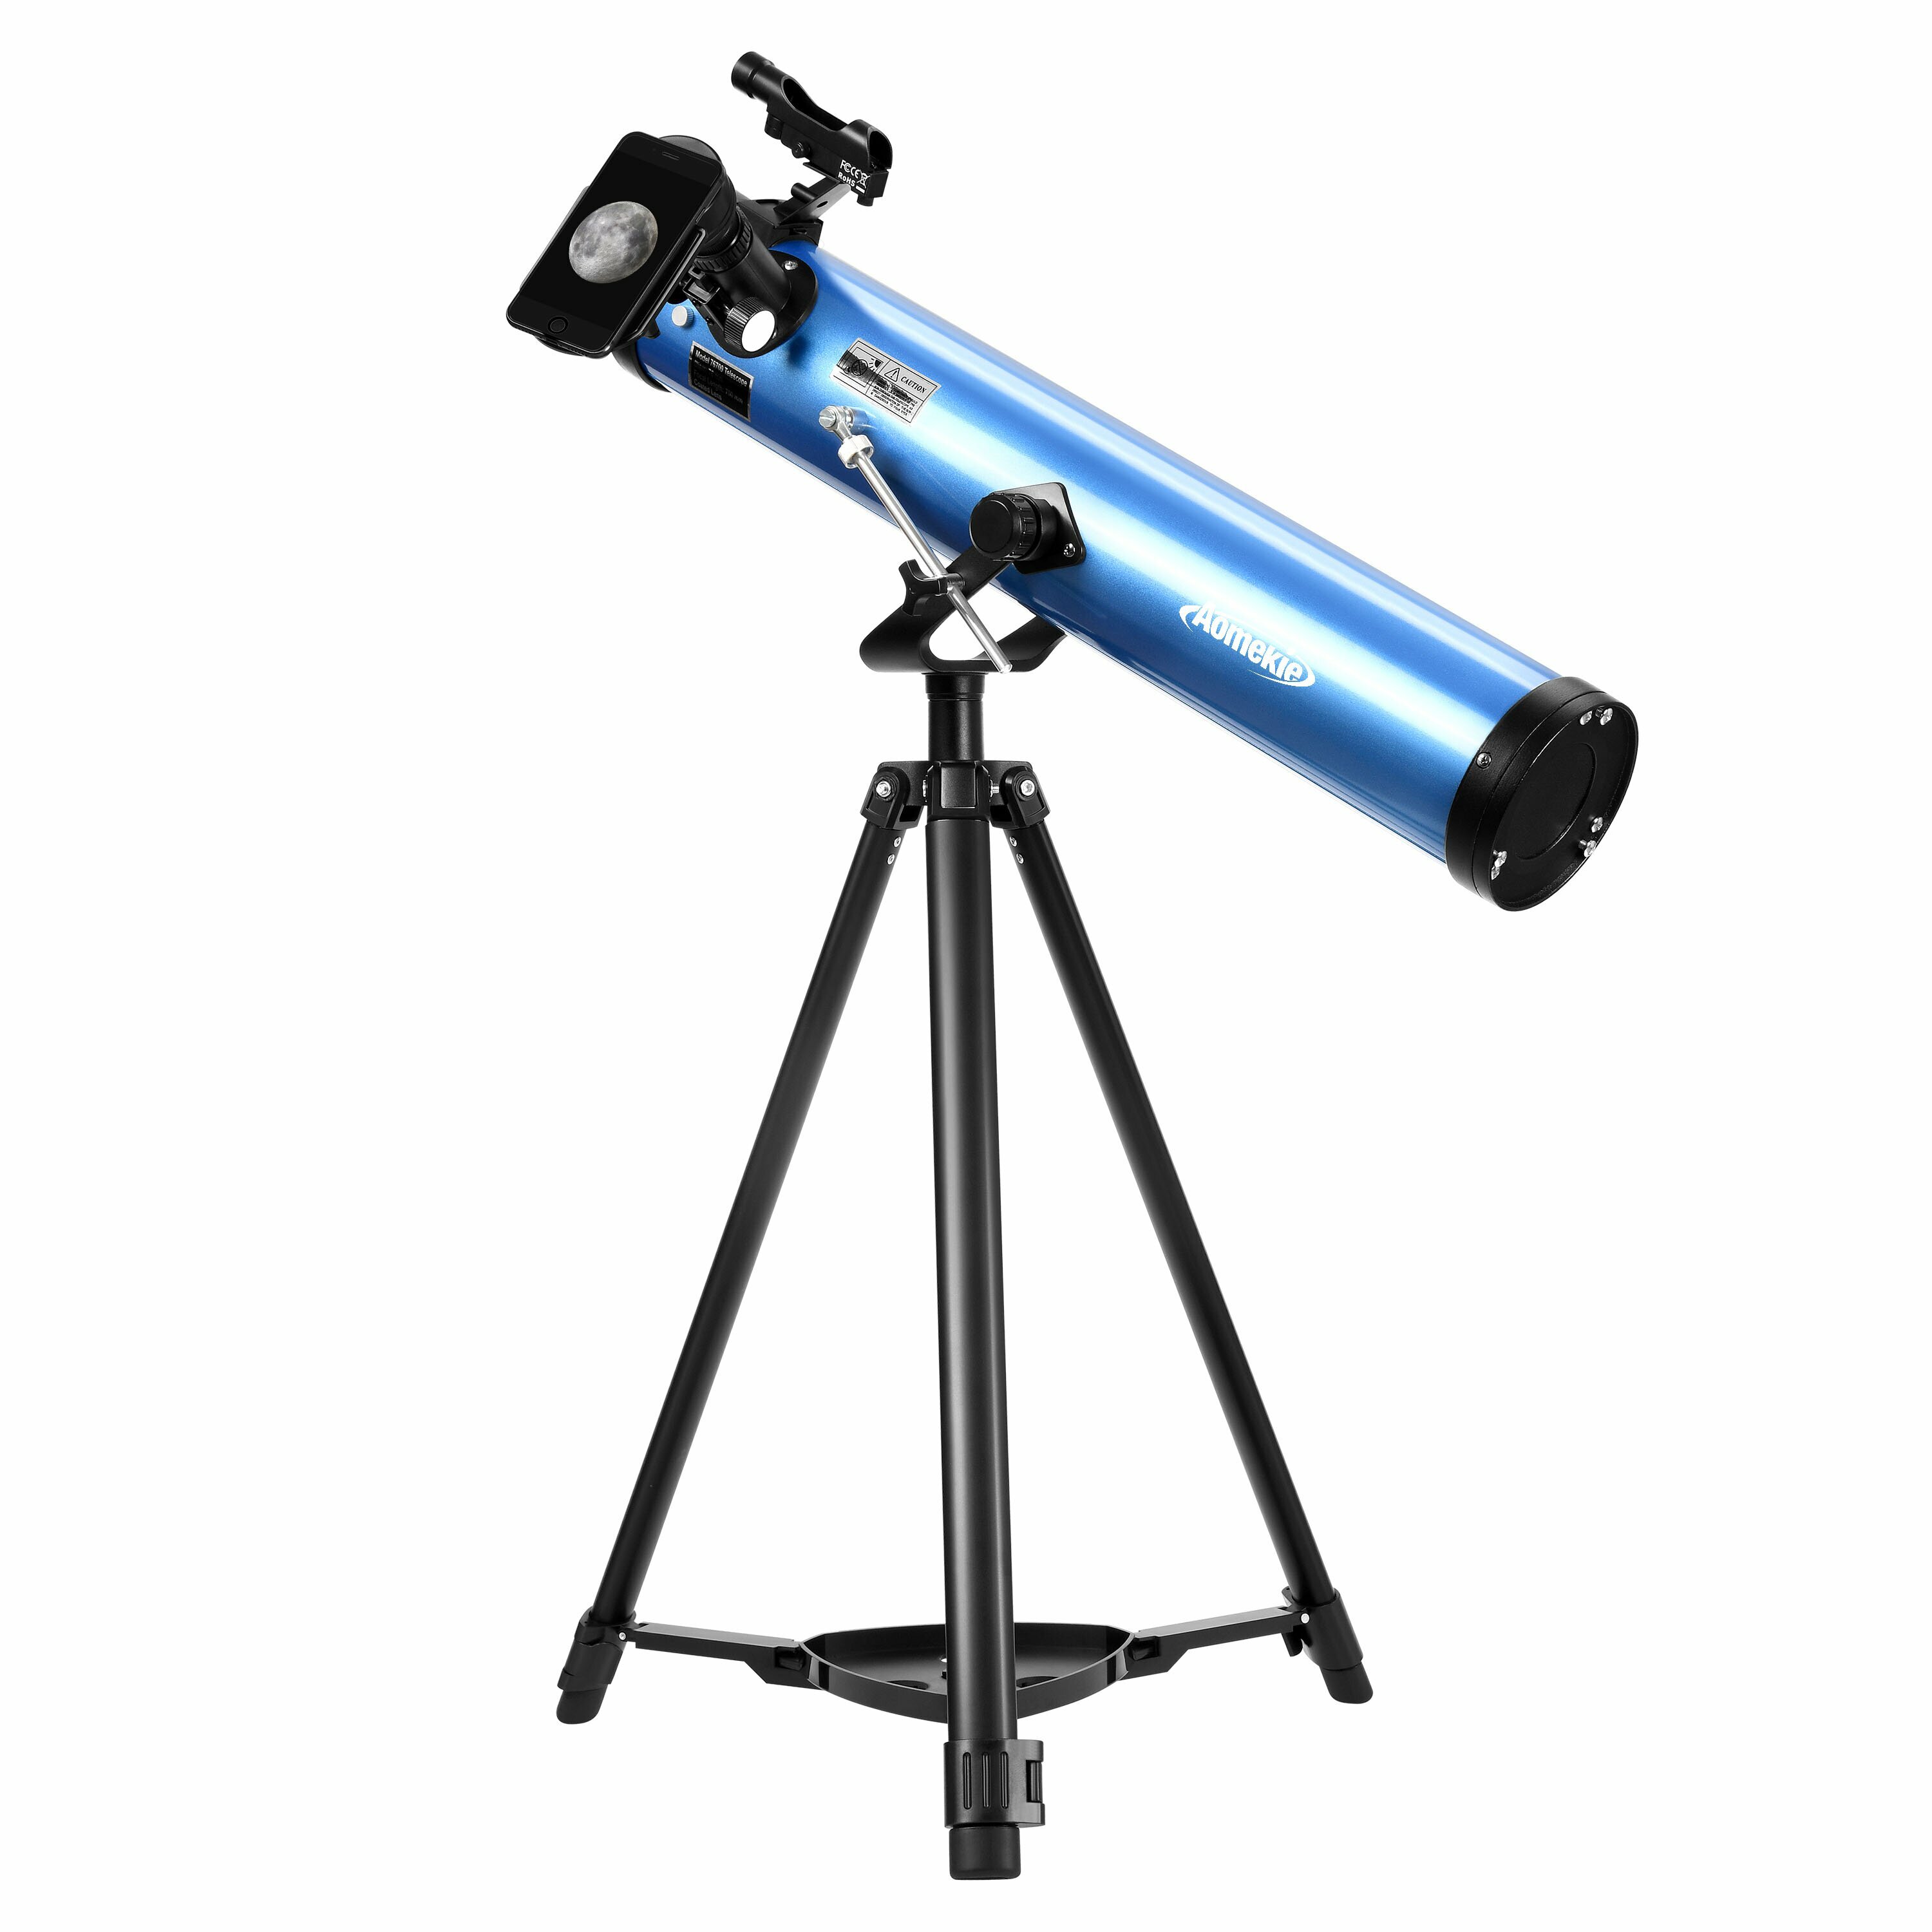 [EU Direct] AOMEKIE Рефлекторные телескопы для взрослых начинающих астрономов 76мм/700мм с адаптером для телефона, Bluetooth контроллером, штативом, и поиском лунного фильтра A02018